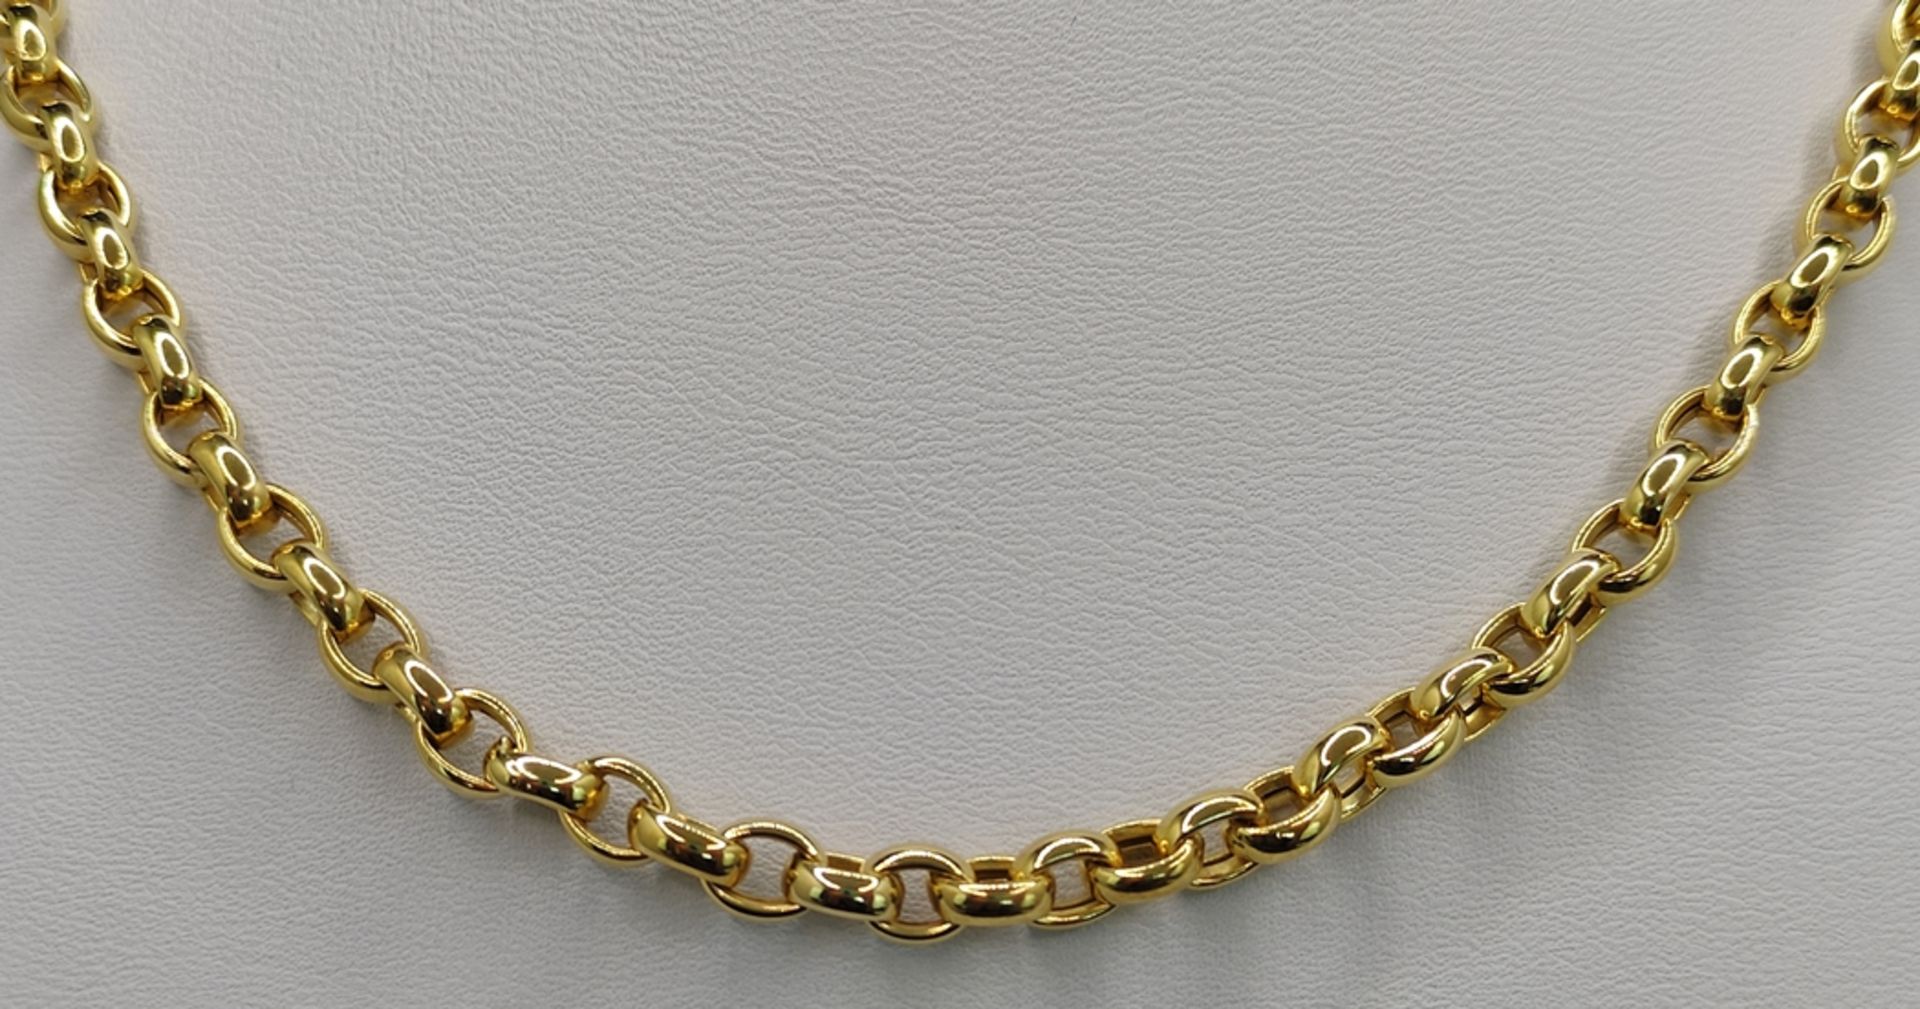 Ankerkette, breit, 585/14K Gelbgold, 15,5g, Länge 40cmAnchor chain, wide, 585/14K yellow gold, 15,